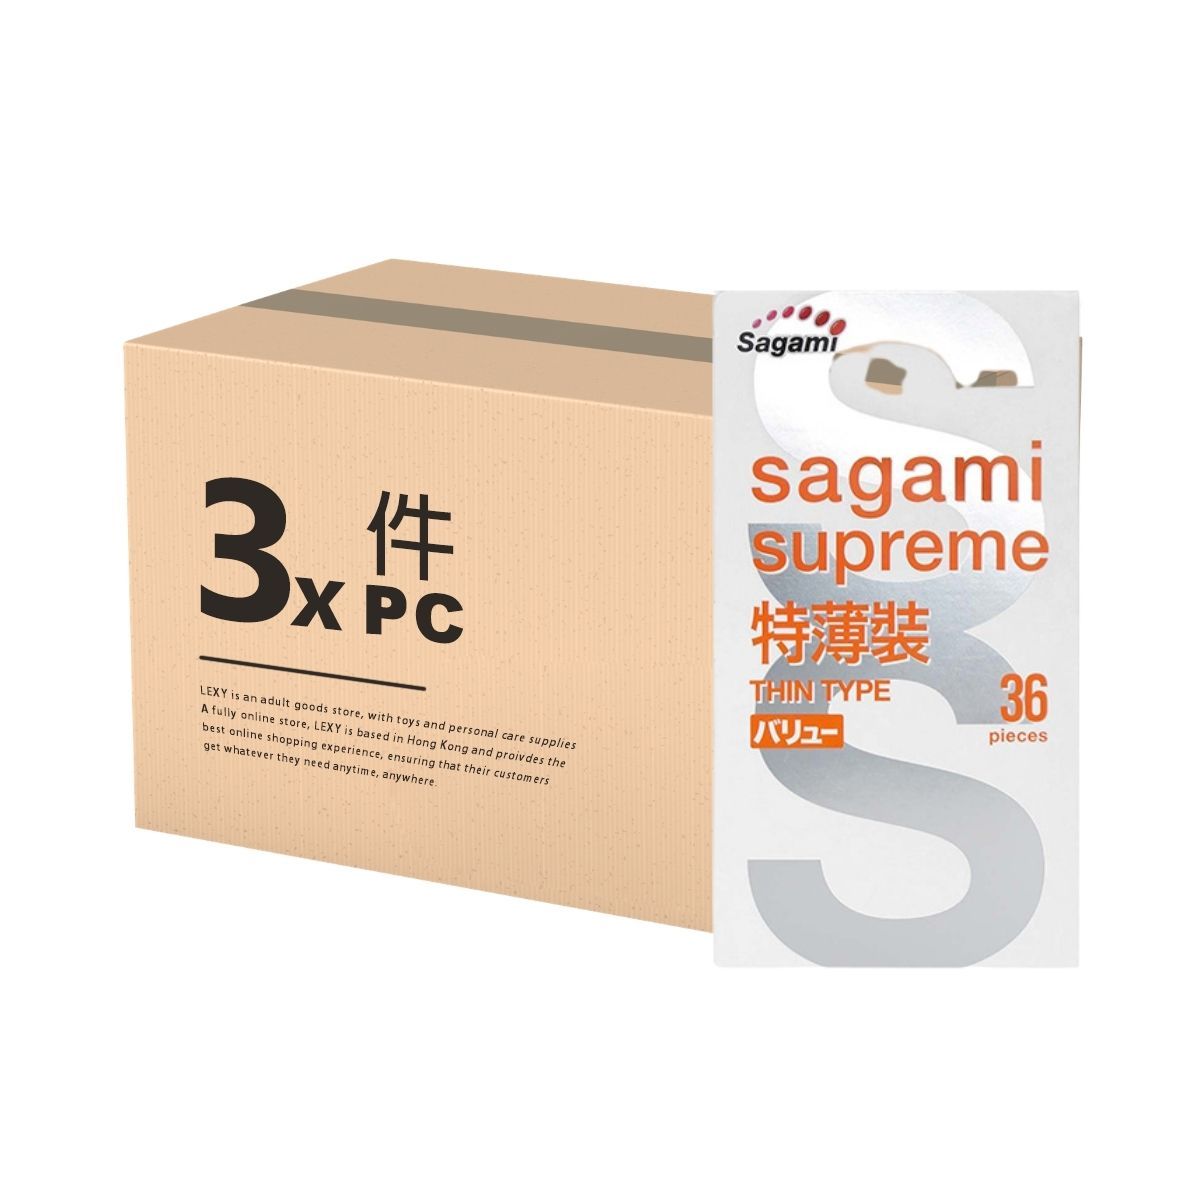 SAGAMI 相模特級 特薄裝 36 片裝 乳膠安全套 X 3 件 優惠套裝 購買